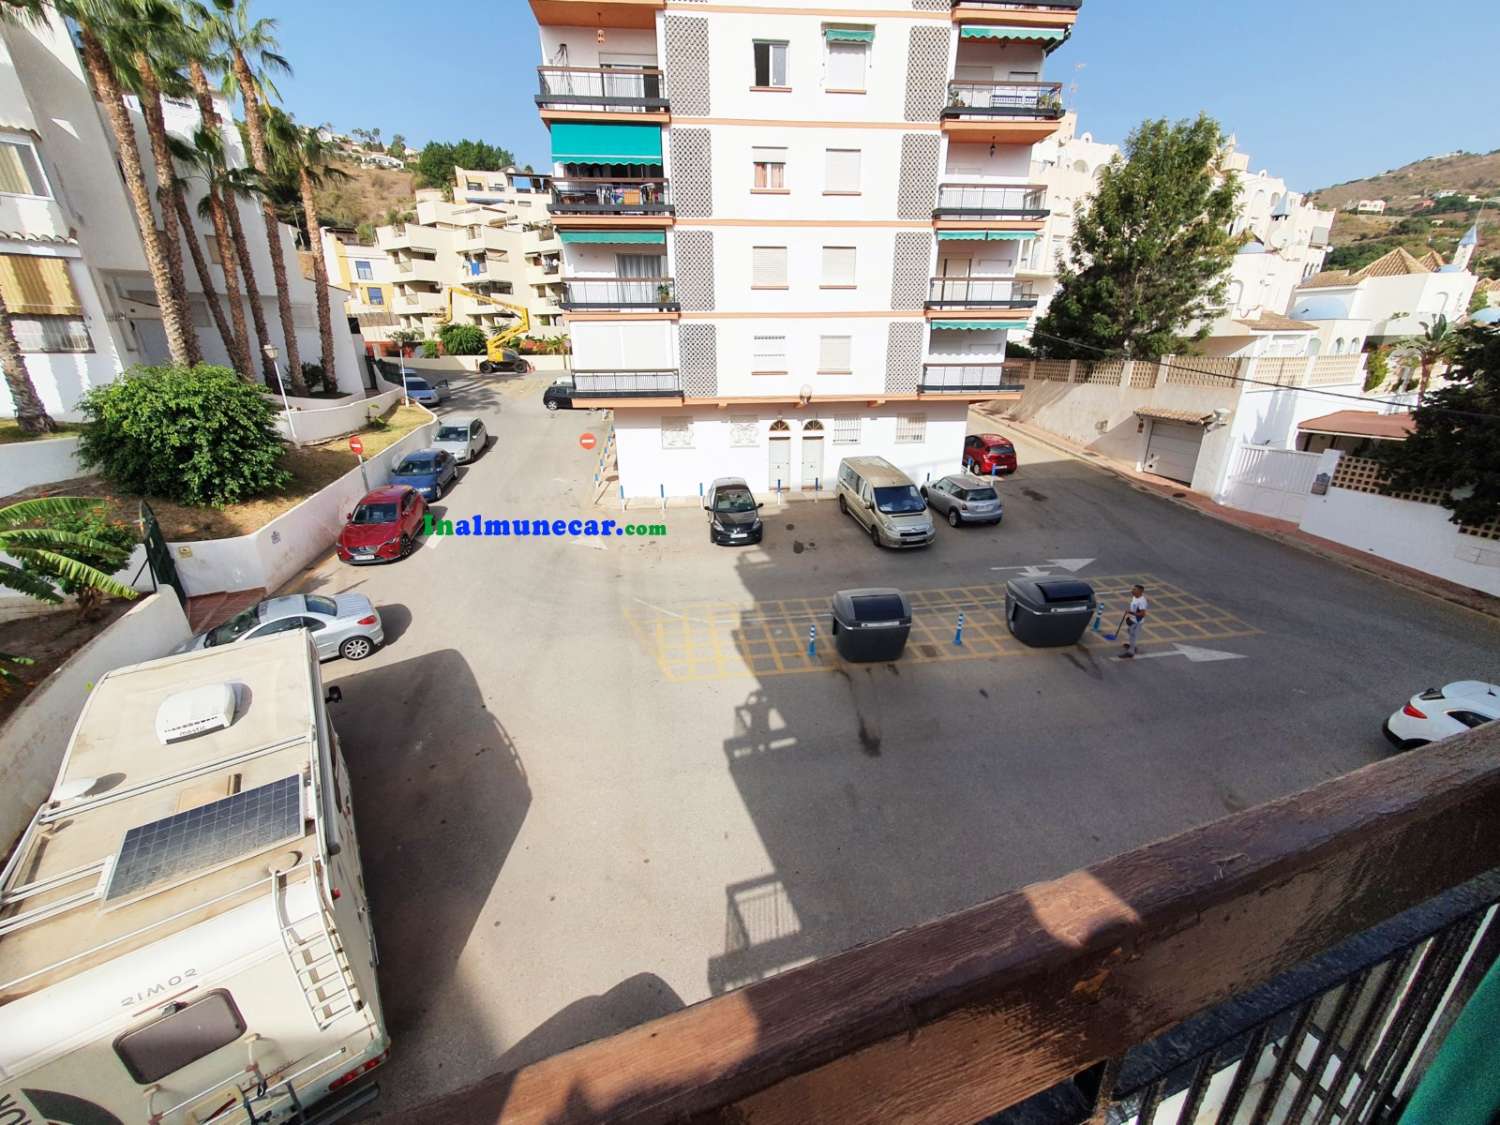 Se vende piso reformado en Almuñecar situado en  2º línea de Playa con aparcamiento comunitario.